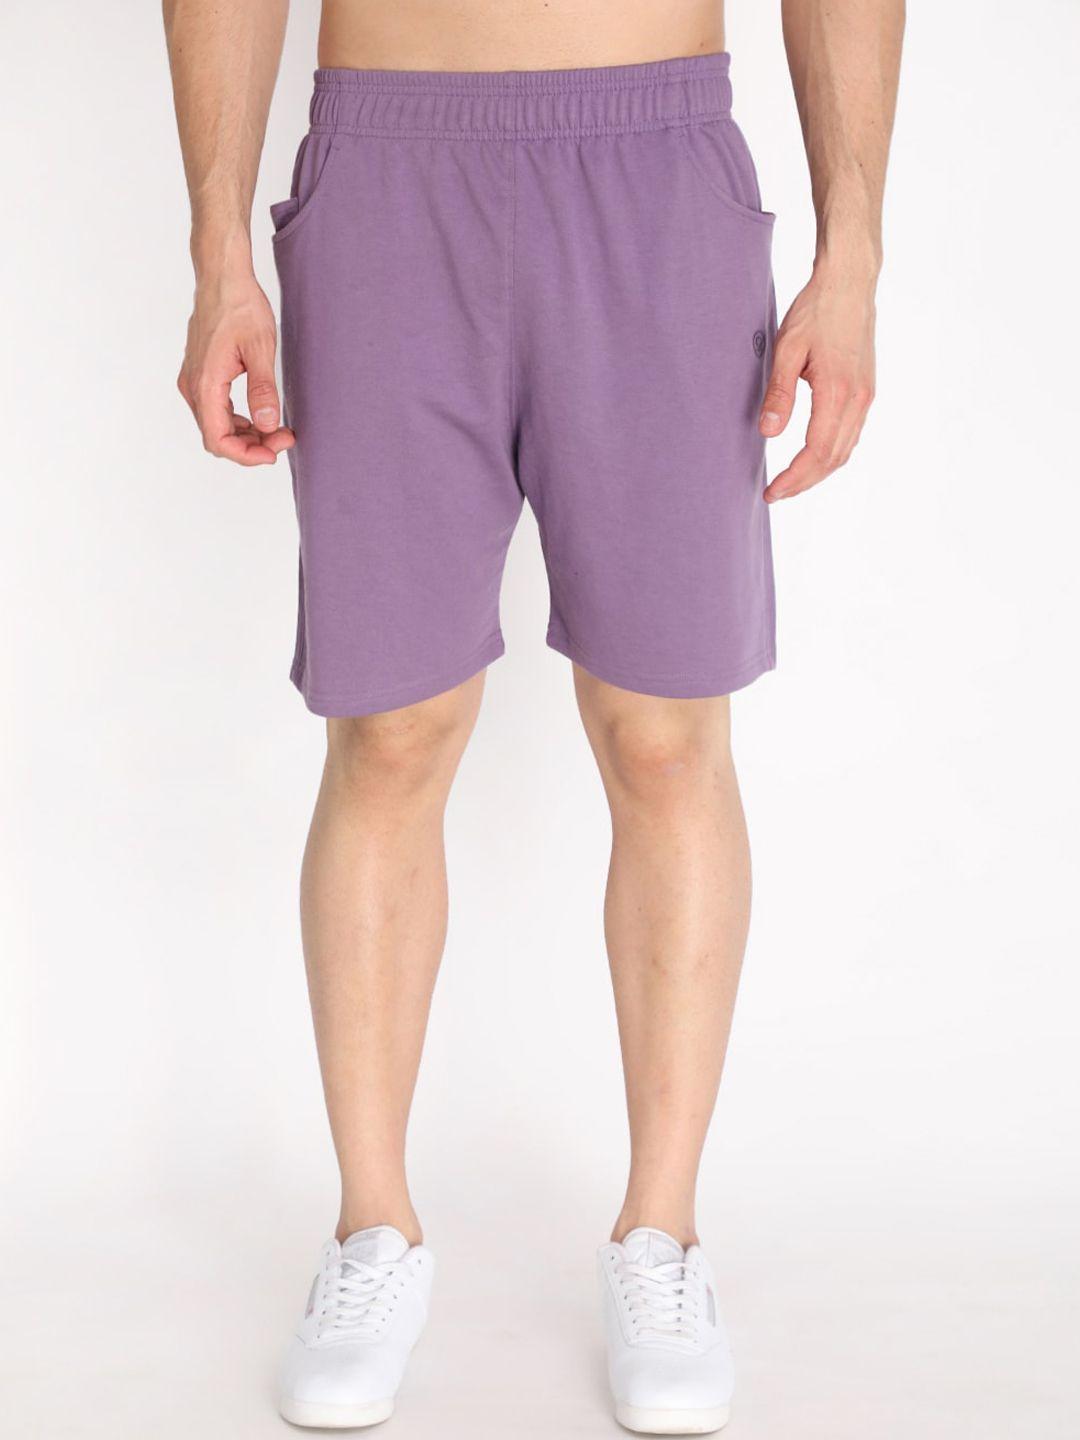 chkokko-men-purple-outdoor-sports-shorts